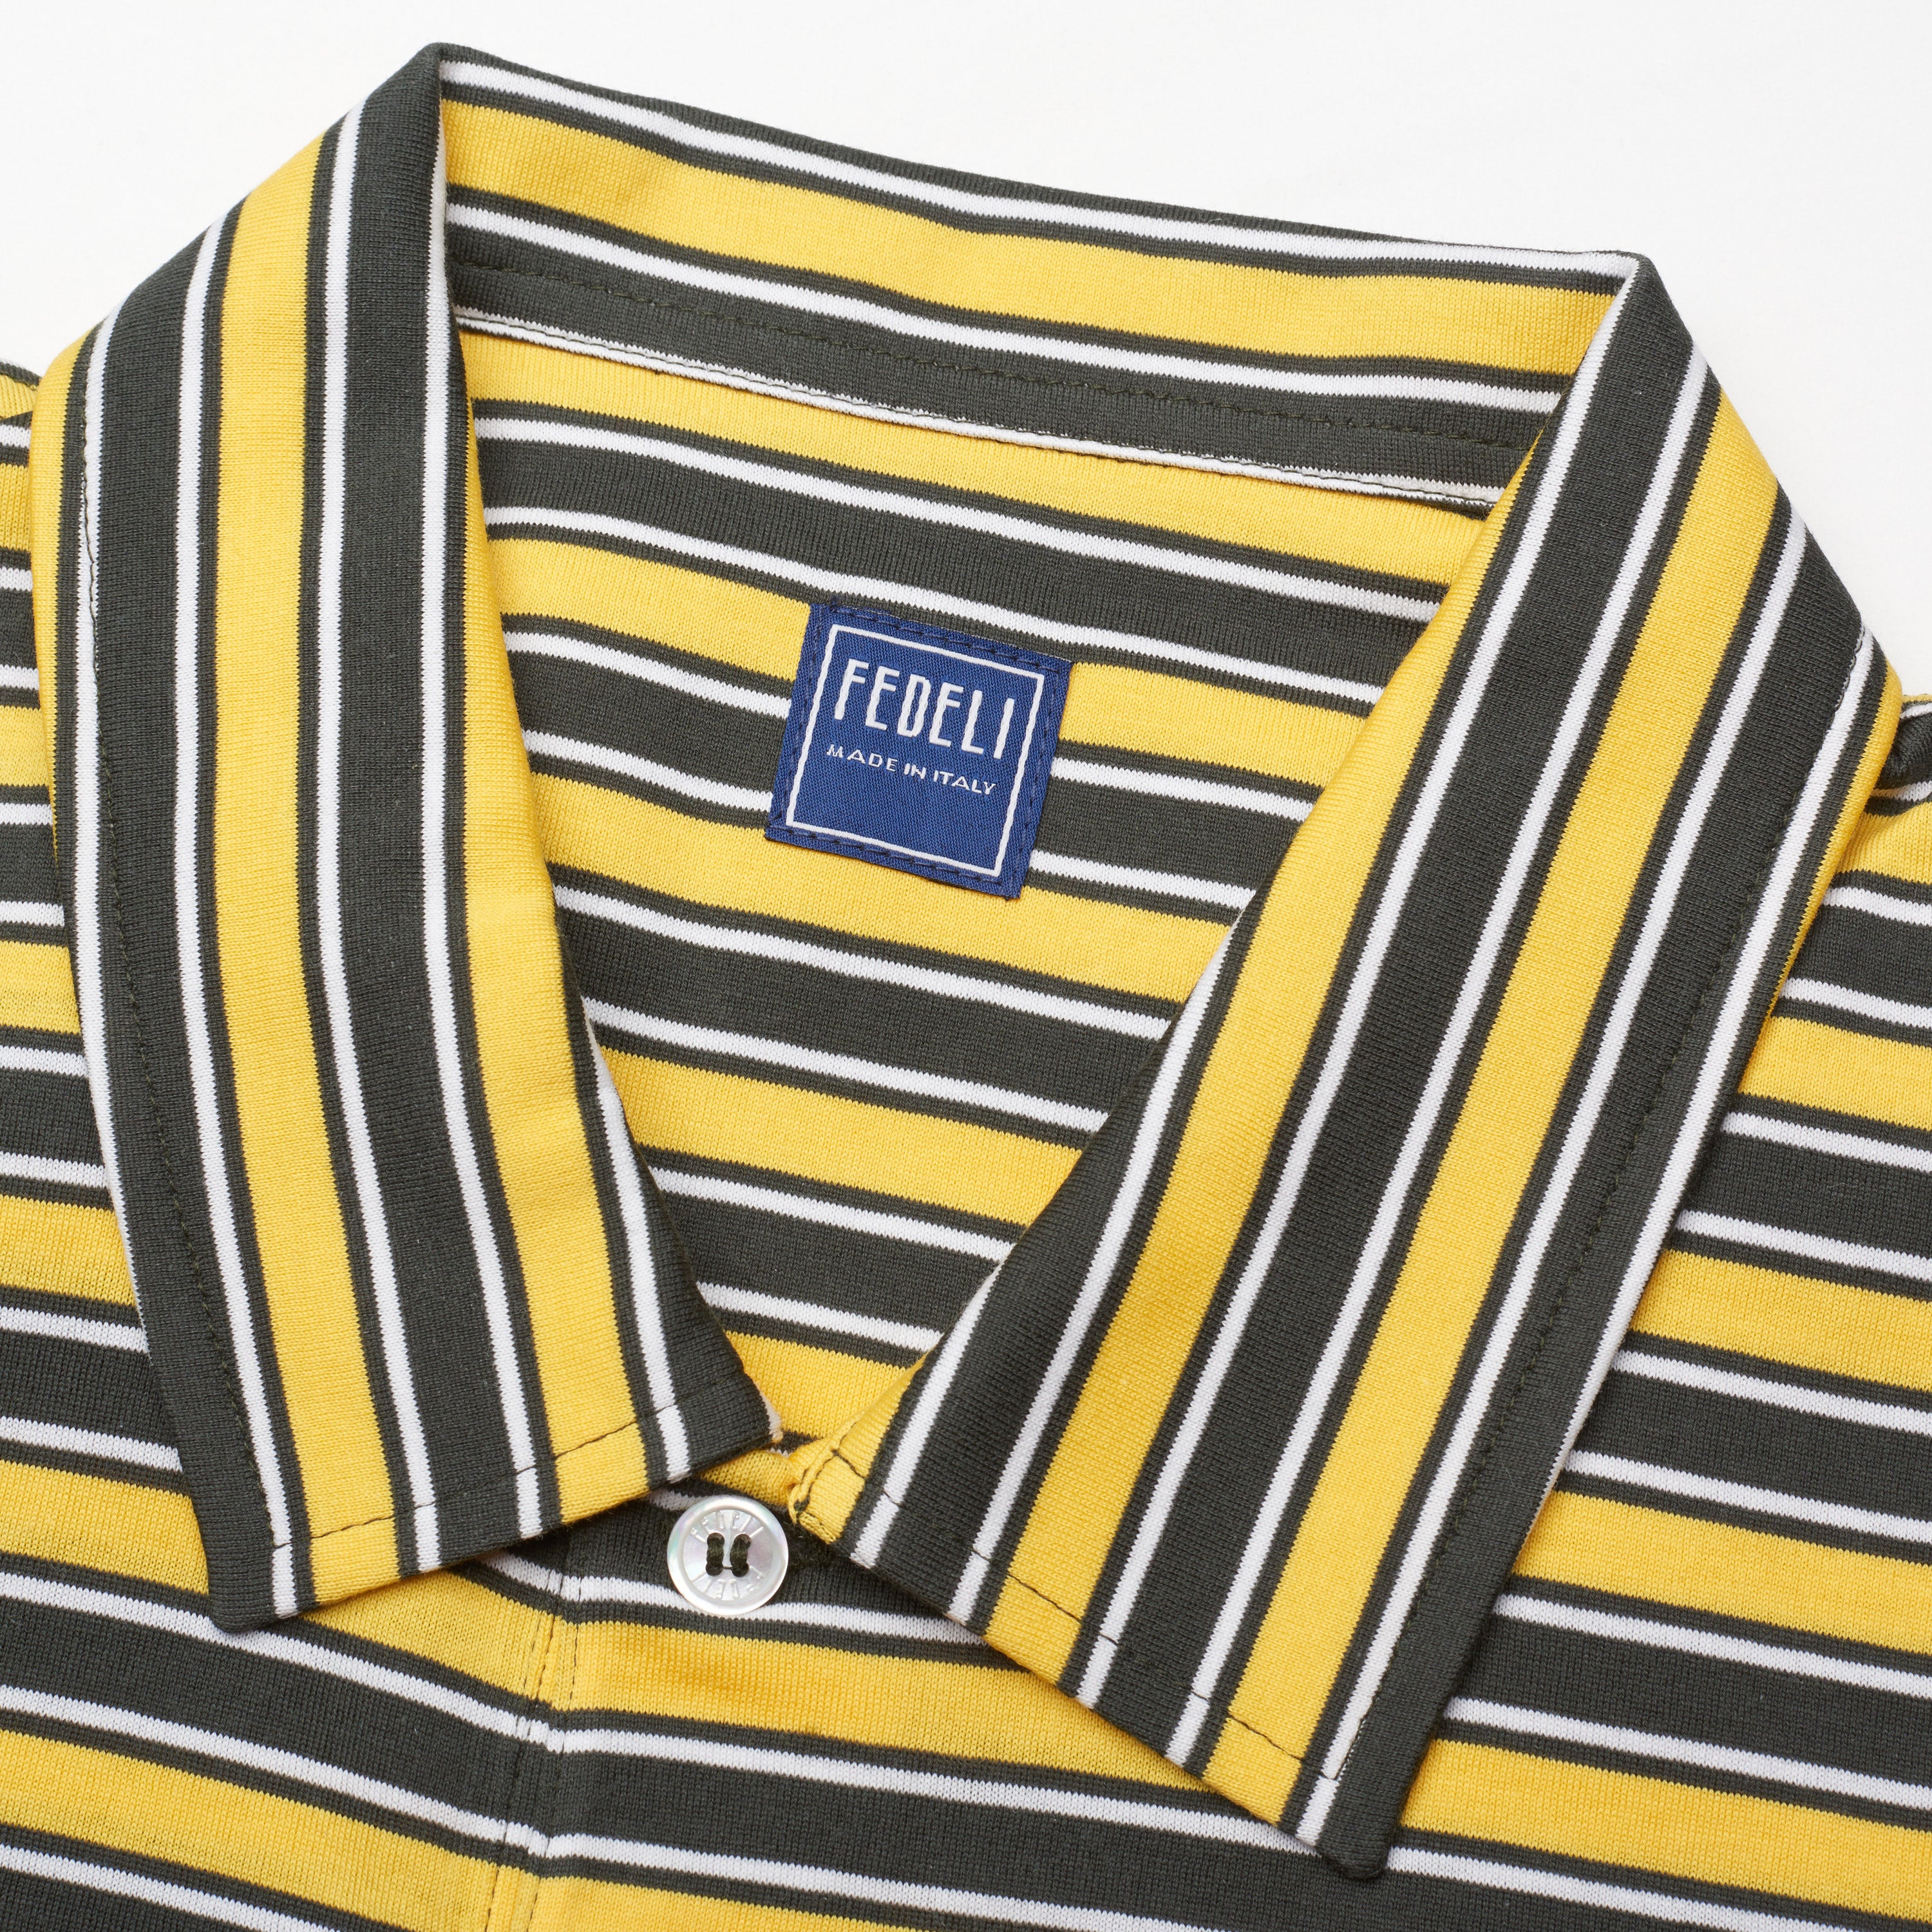 FEDELI "Florida" Black-Yellow-White Striped Cotton Jersey Polo Shirt NEW